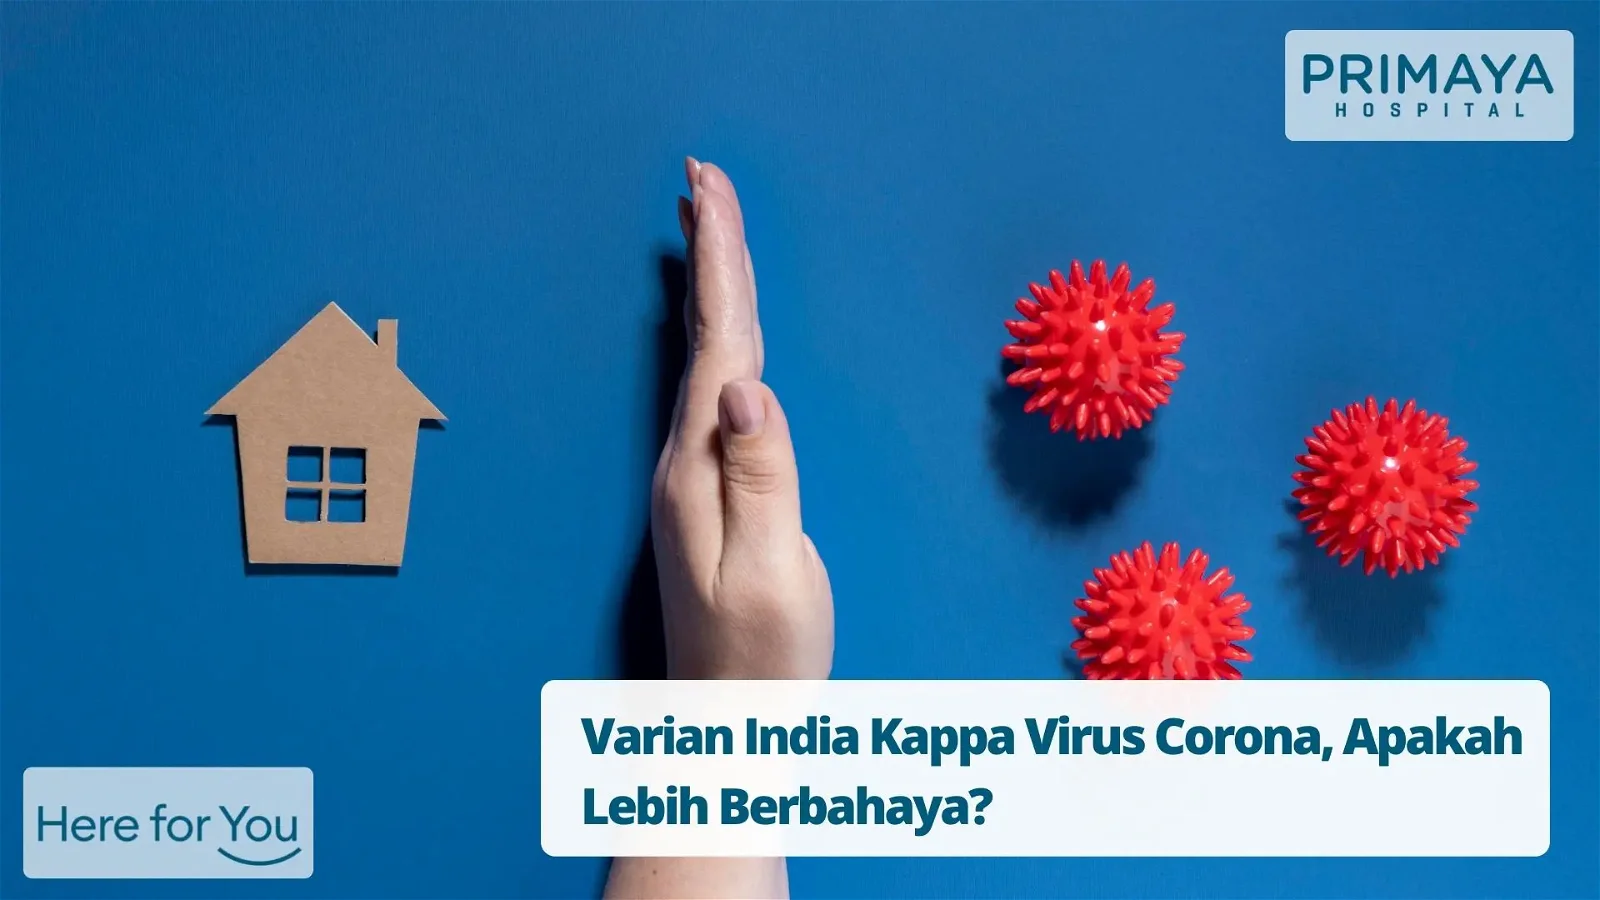 Varian India Kappa Virus Corona, Apakah Lebih Berbahaya